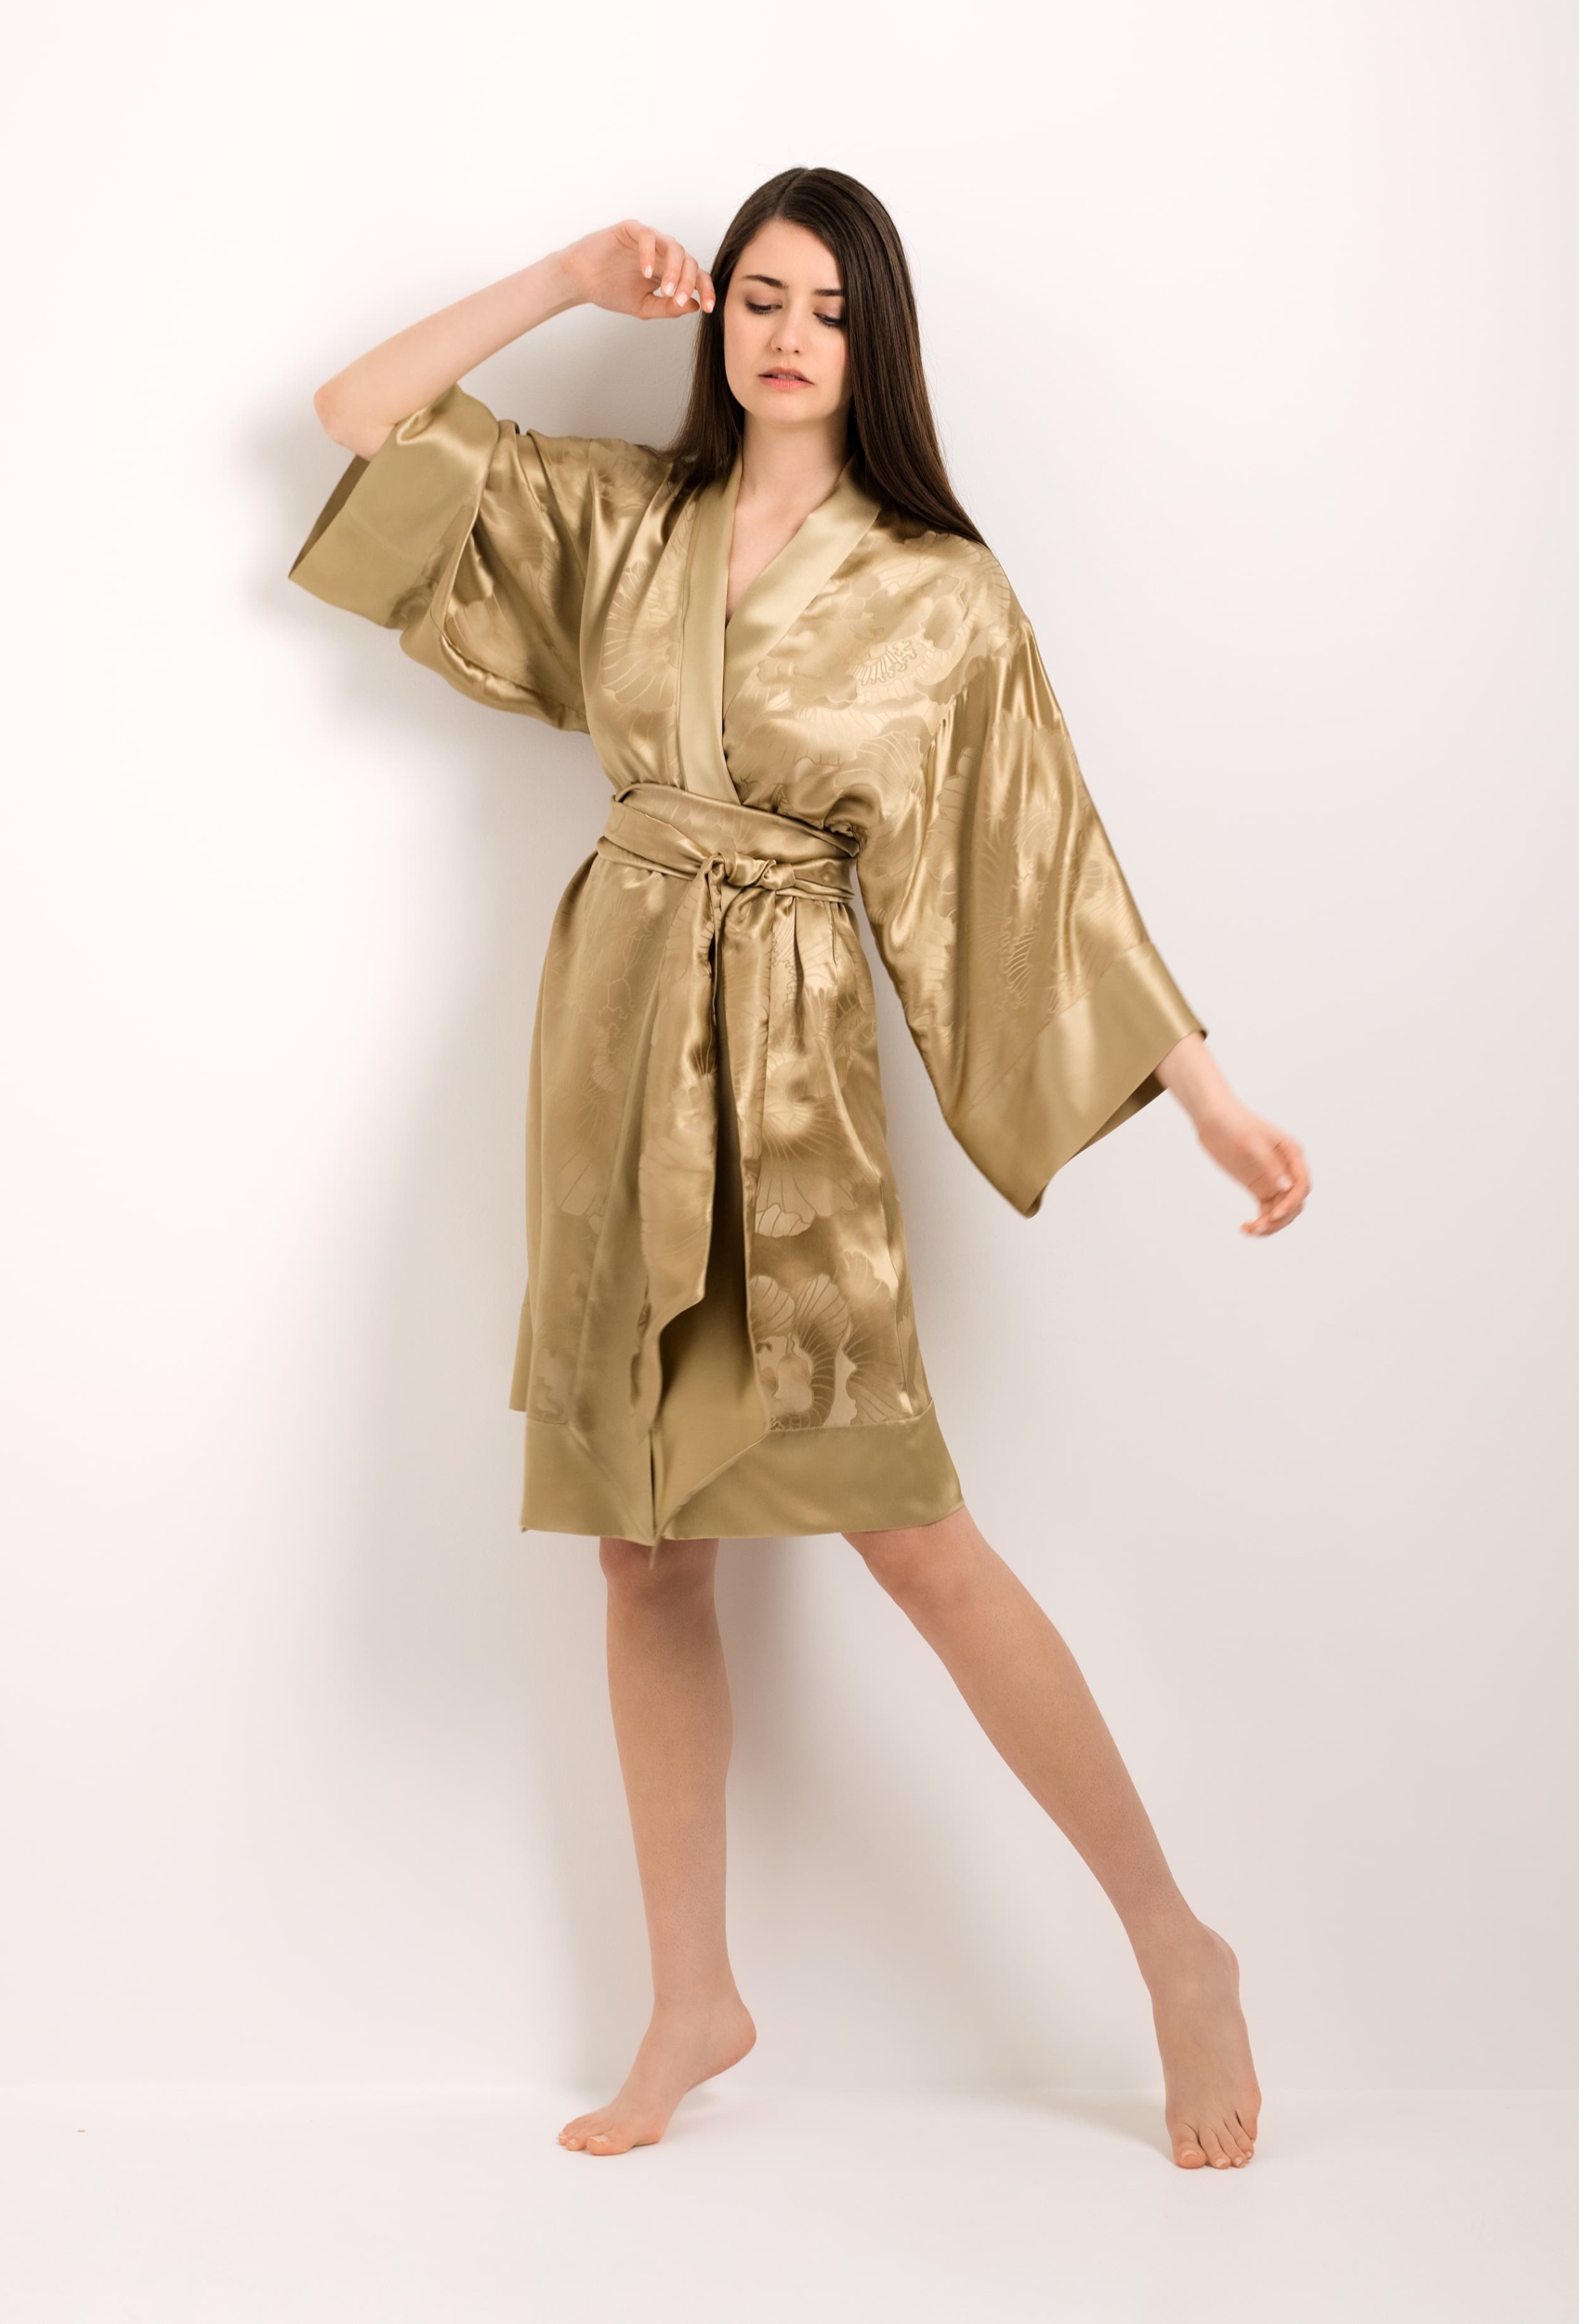 - Gilson peony Jacquard gold - Carine kimono silk